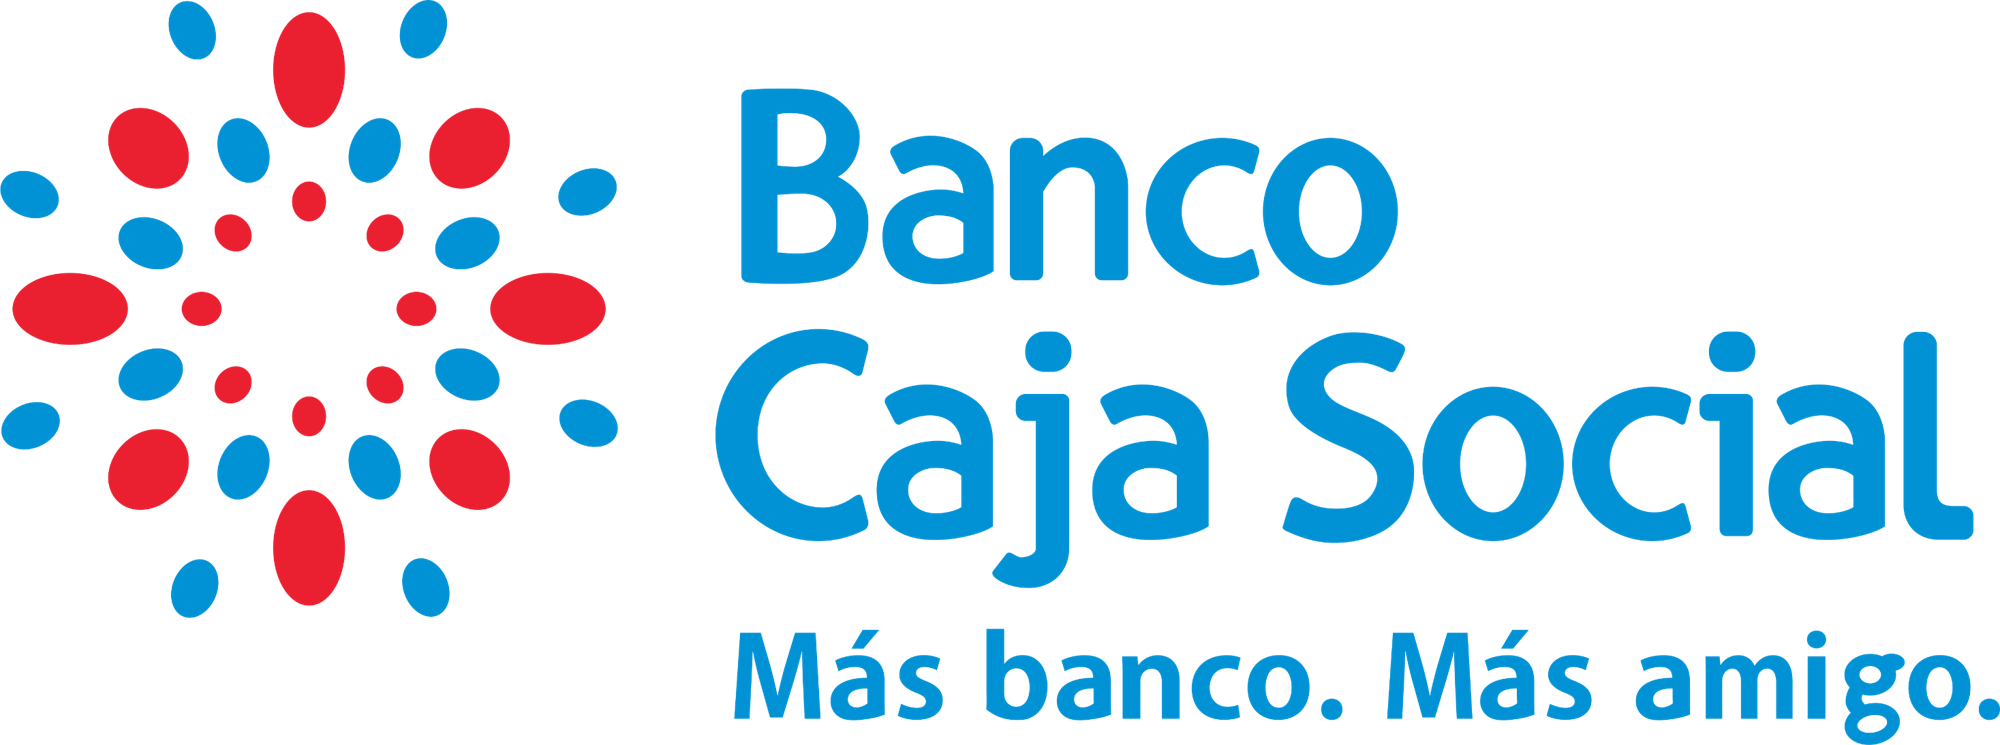 Banco Caja Social 2011 - Banco Caja Social (2000x745), Png Download